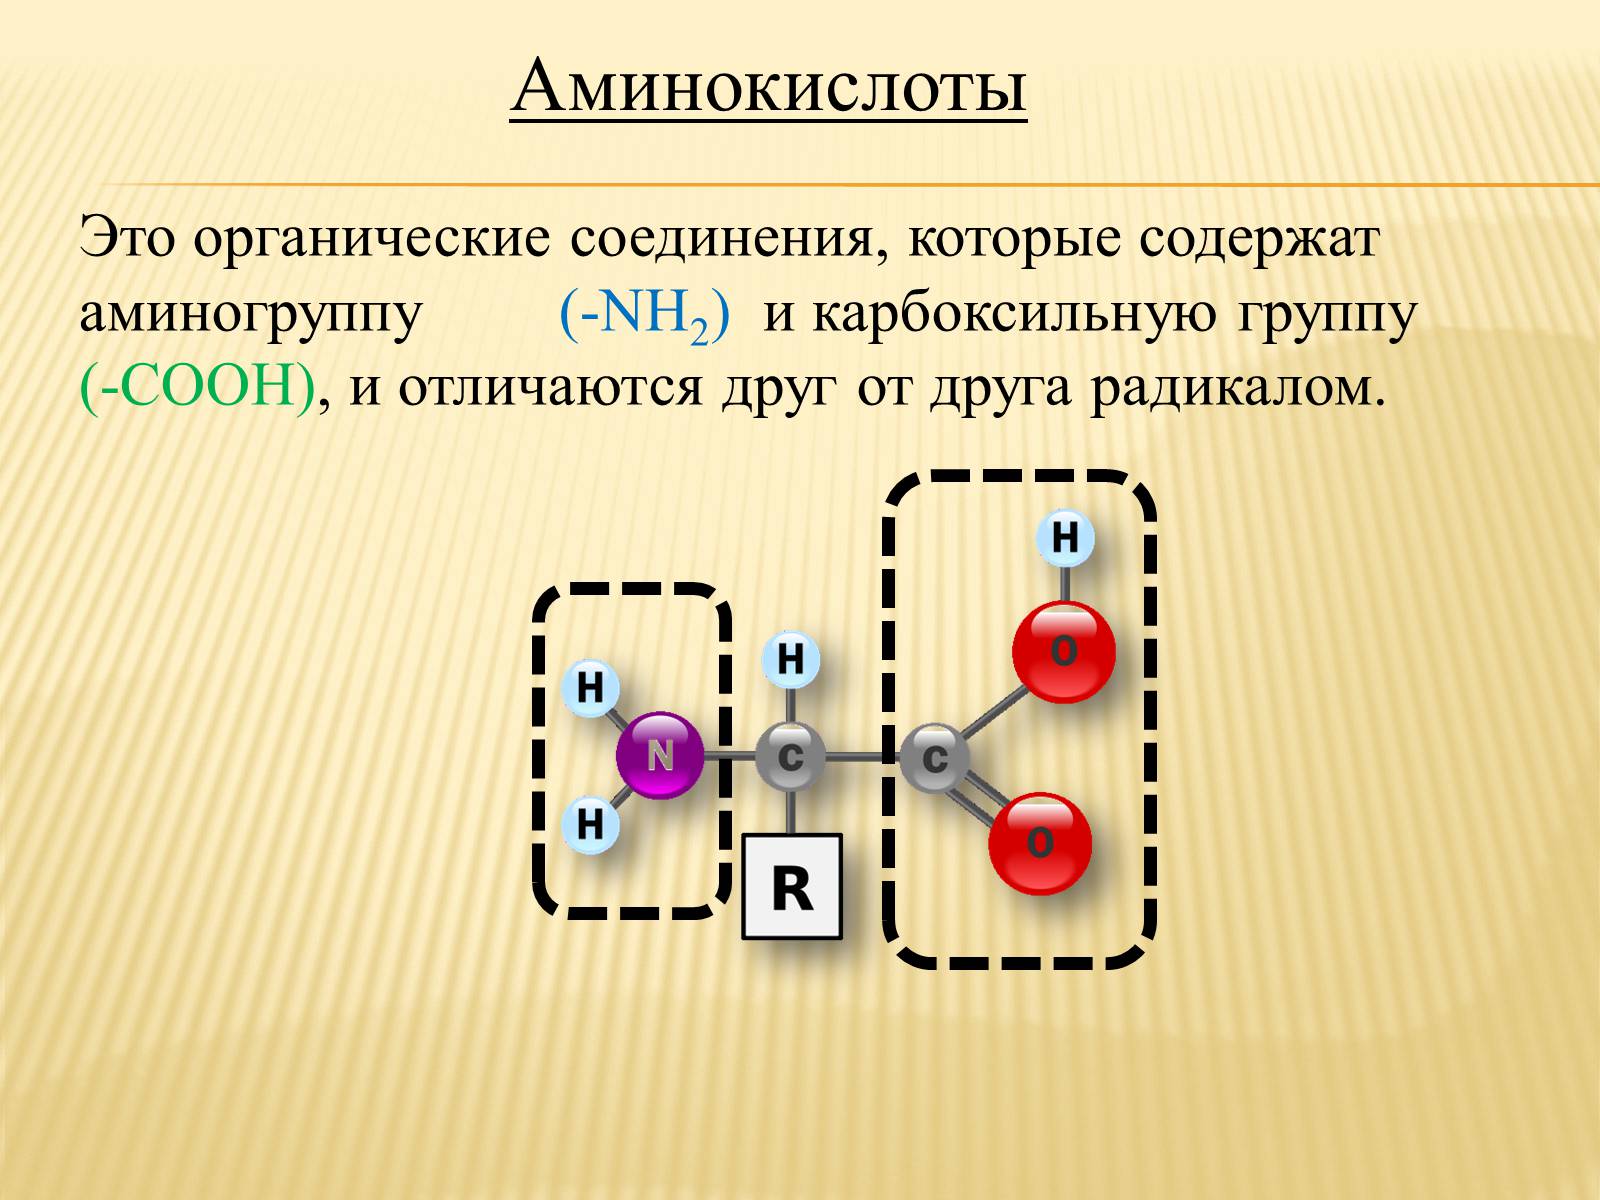 Ret solutru что это. Аминокислоты это. Аминокислоты определение. Диаминокислоты. Аминокислоты это органические соединения.